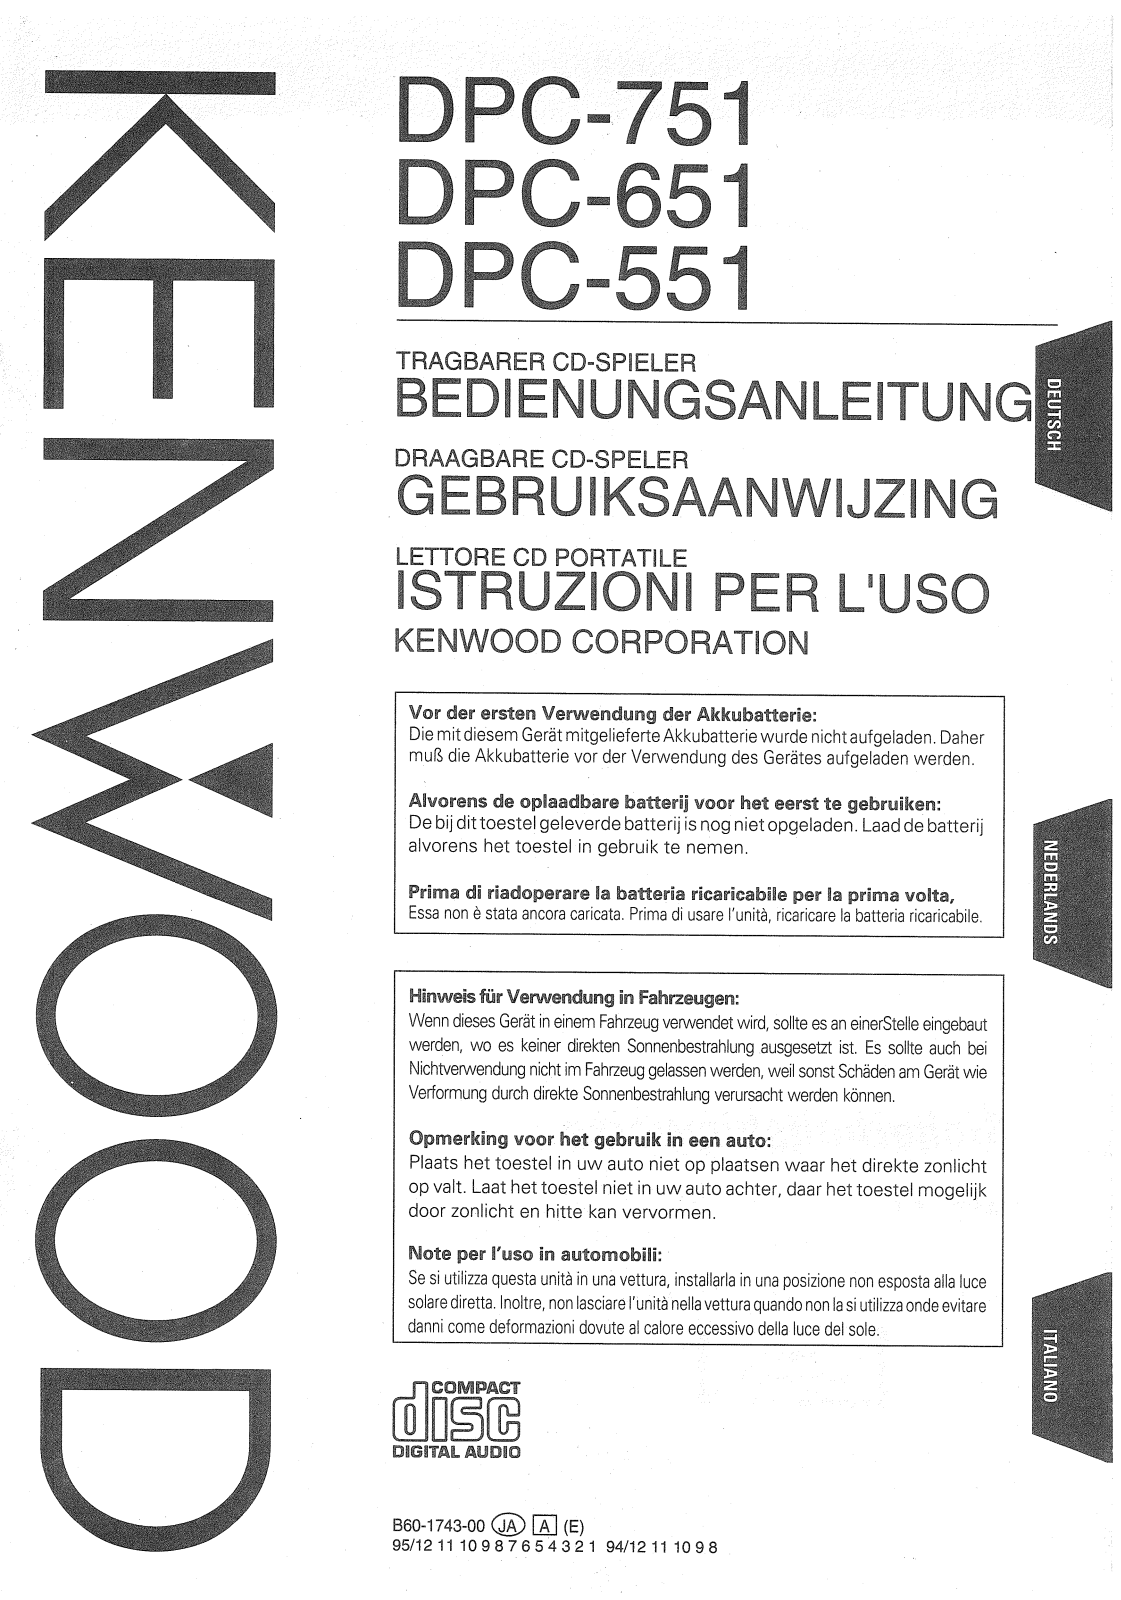 Kenwood DPC-551, DPC-651, DPC-751 Manual